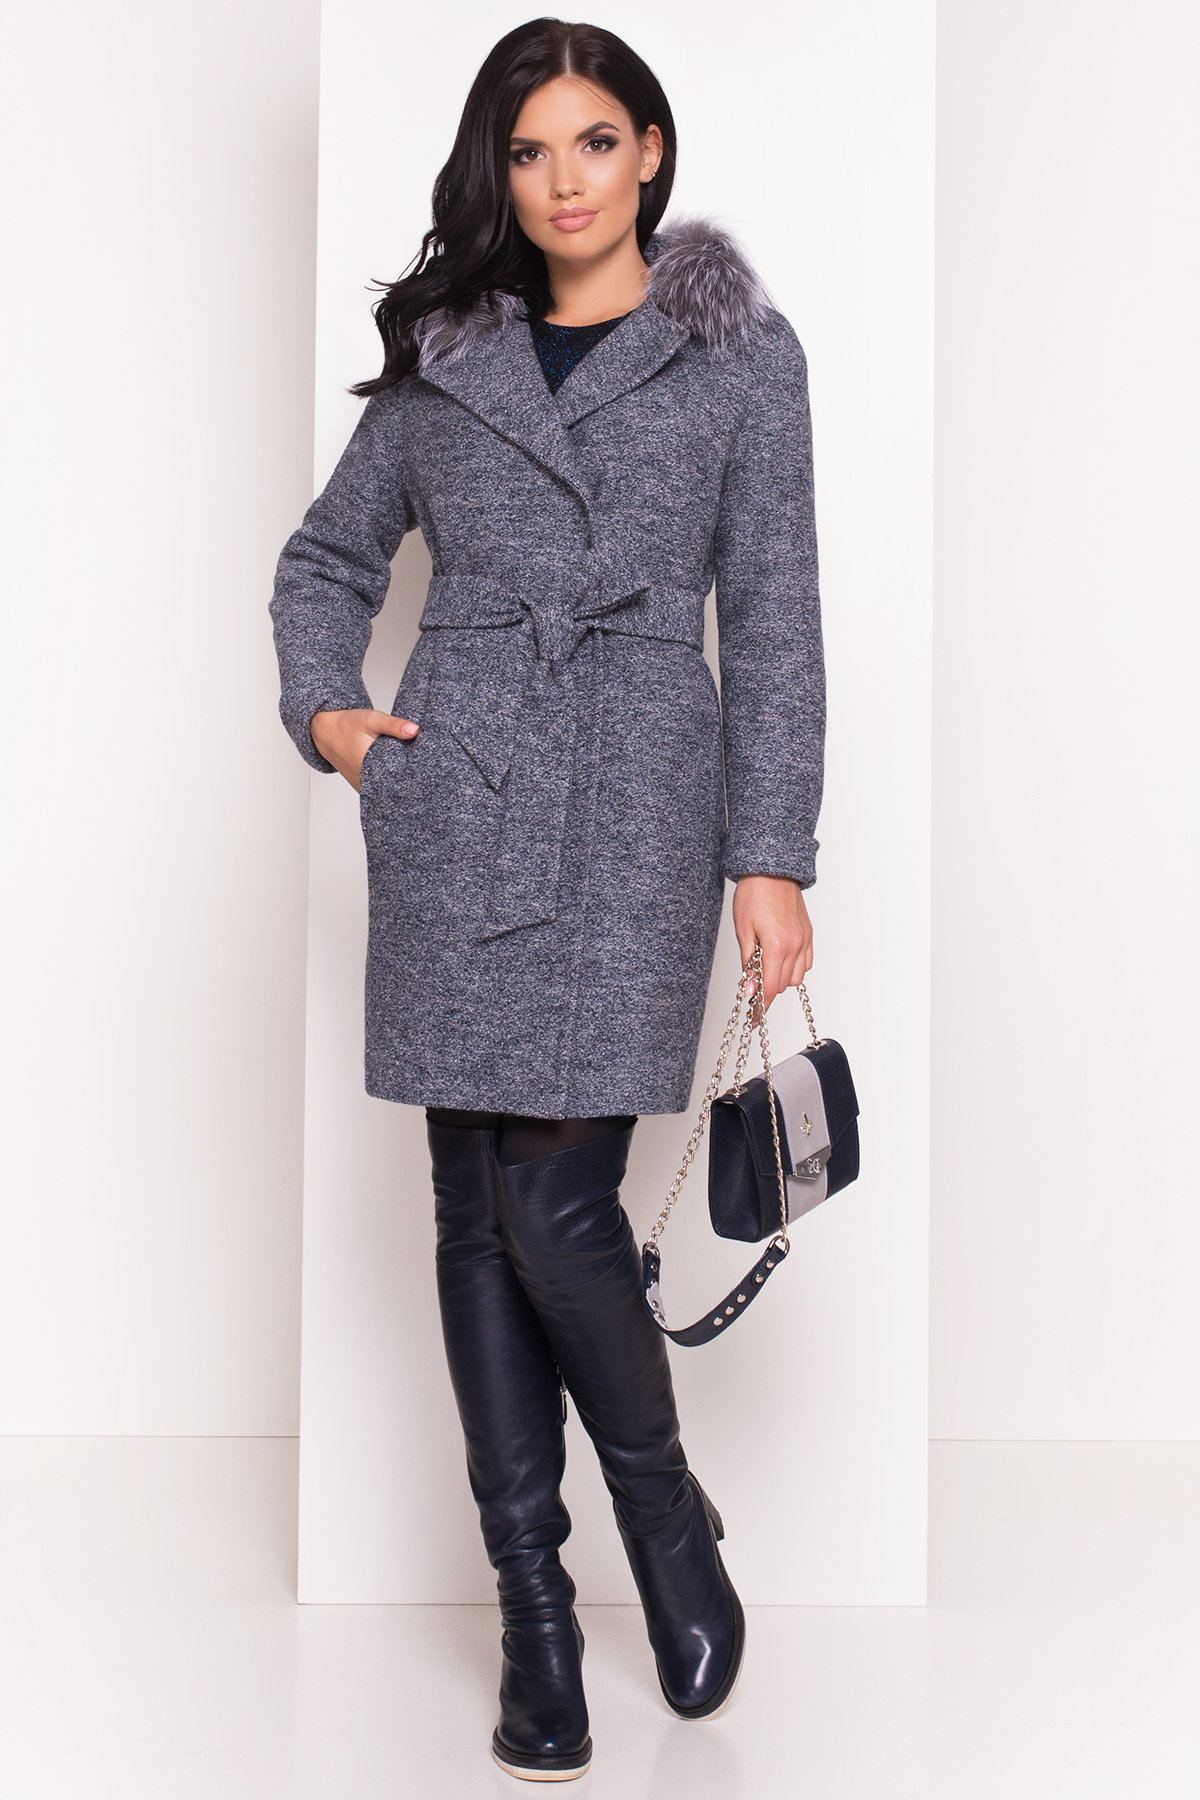 Купить пальто женское недорого от Modus Пальто зима Приора 5427 